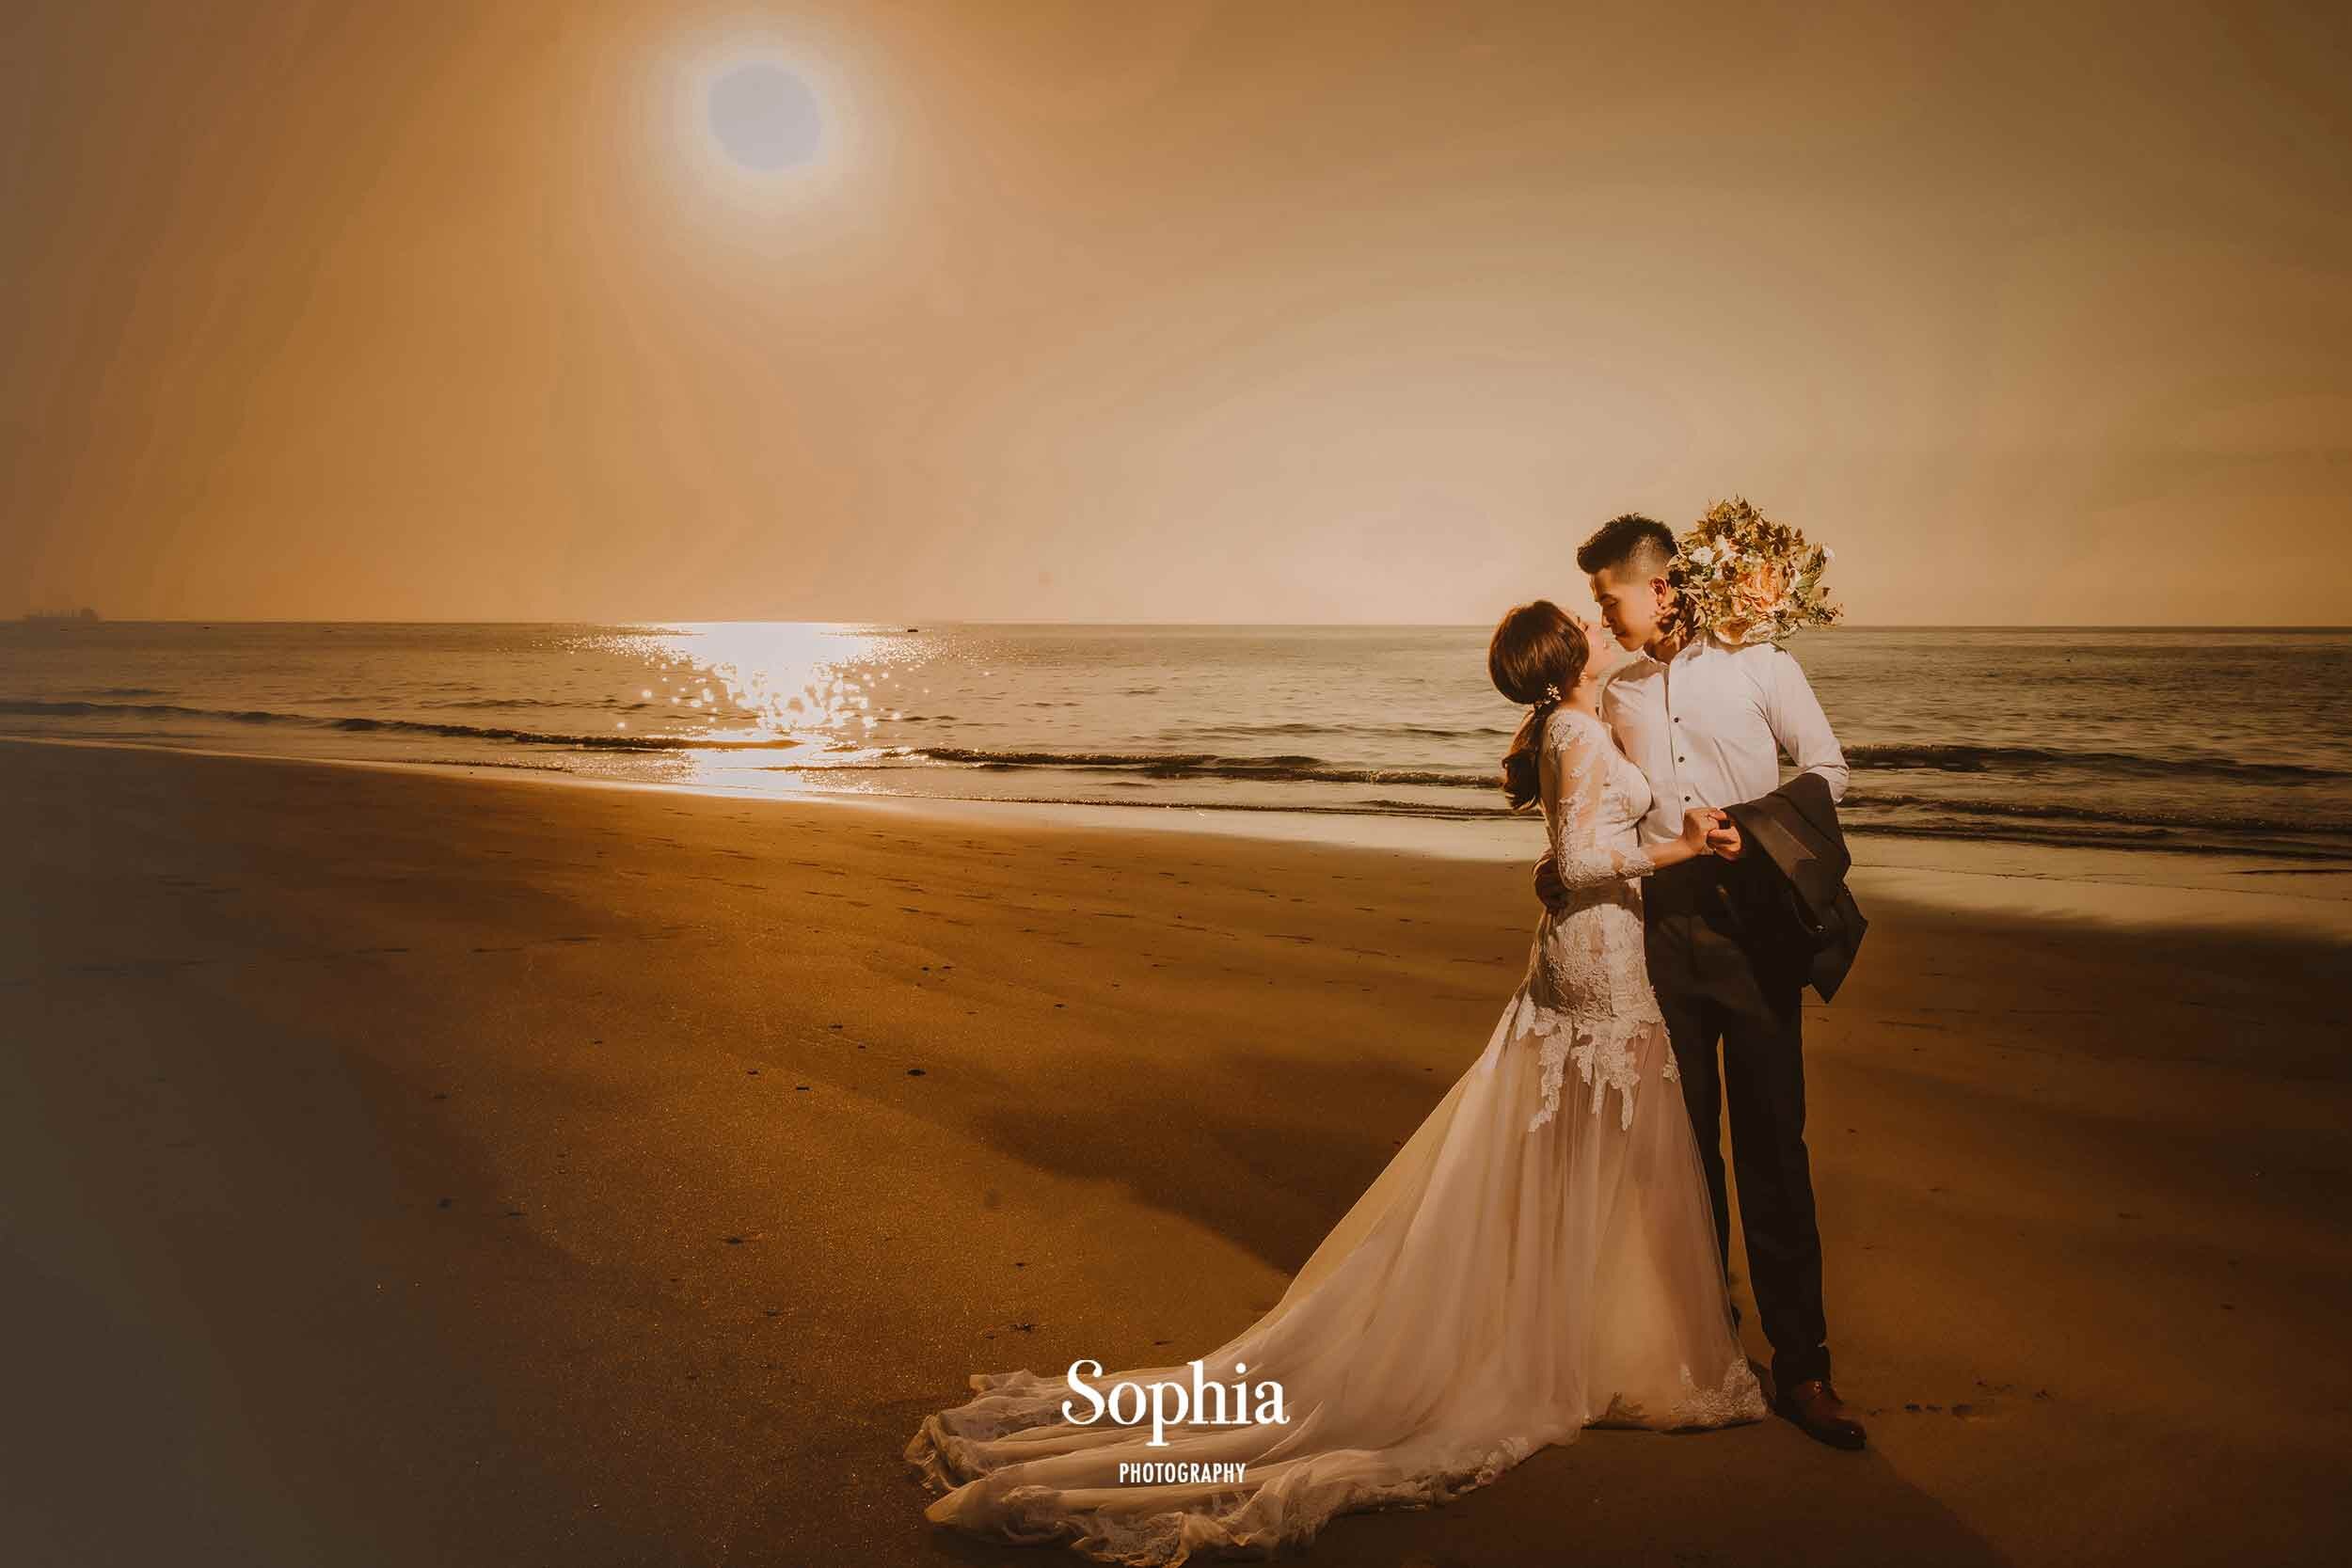  蘇菲雅婚紗-外景婚紗照-海邊-沙灘-夕陽 